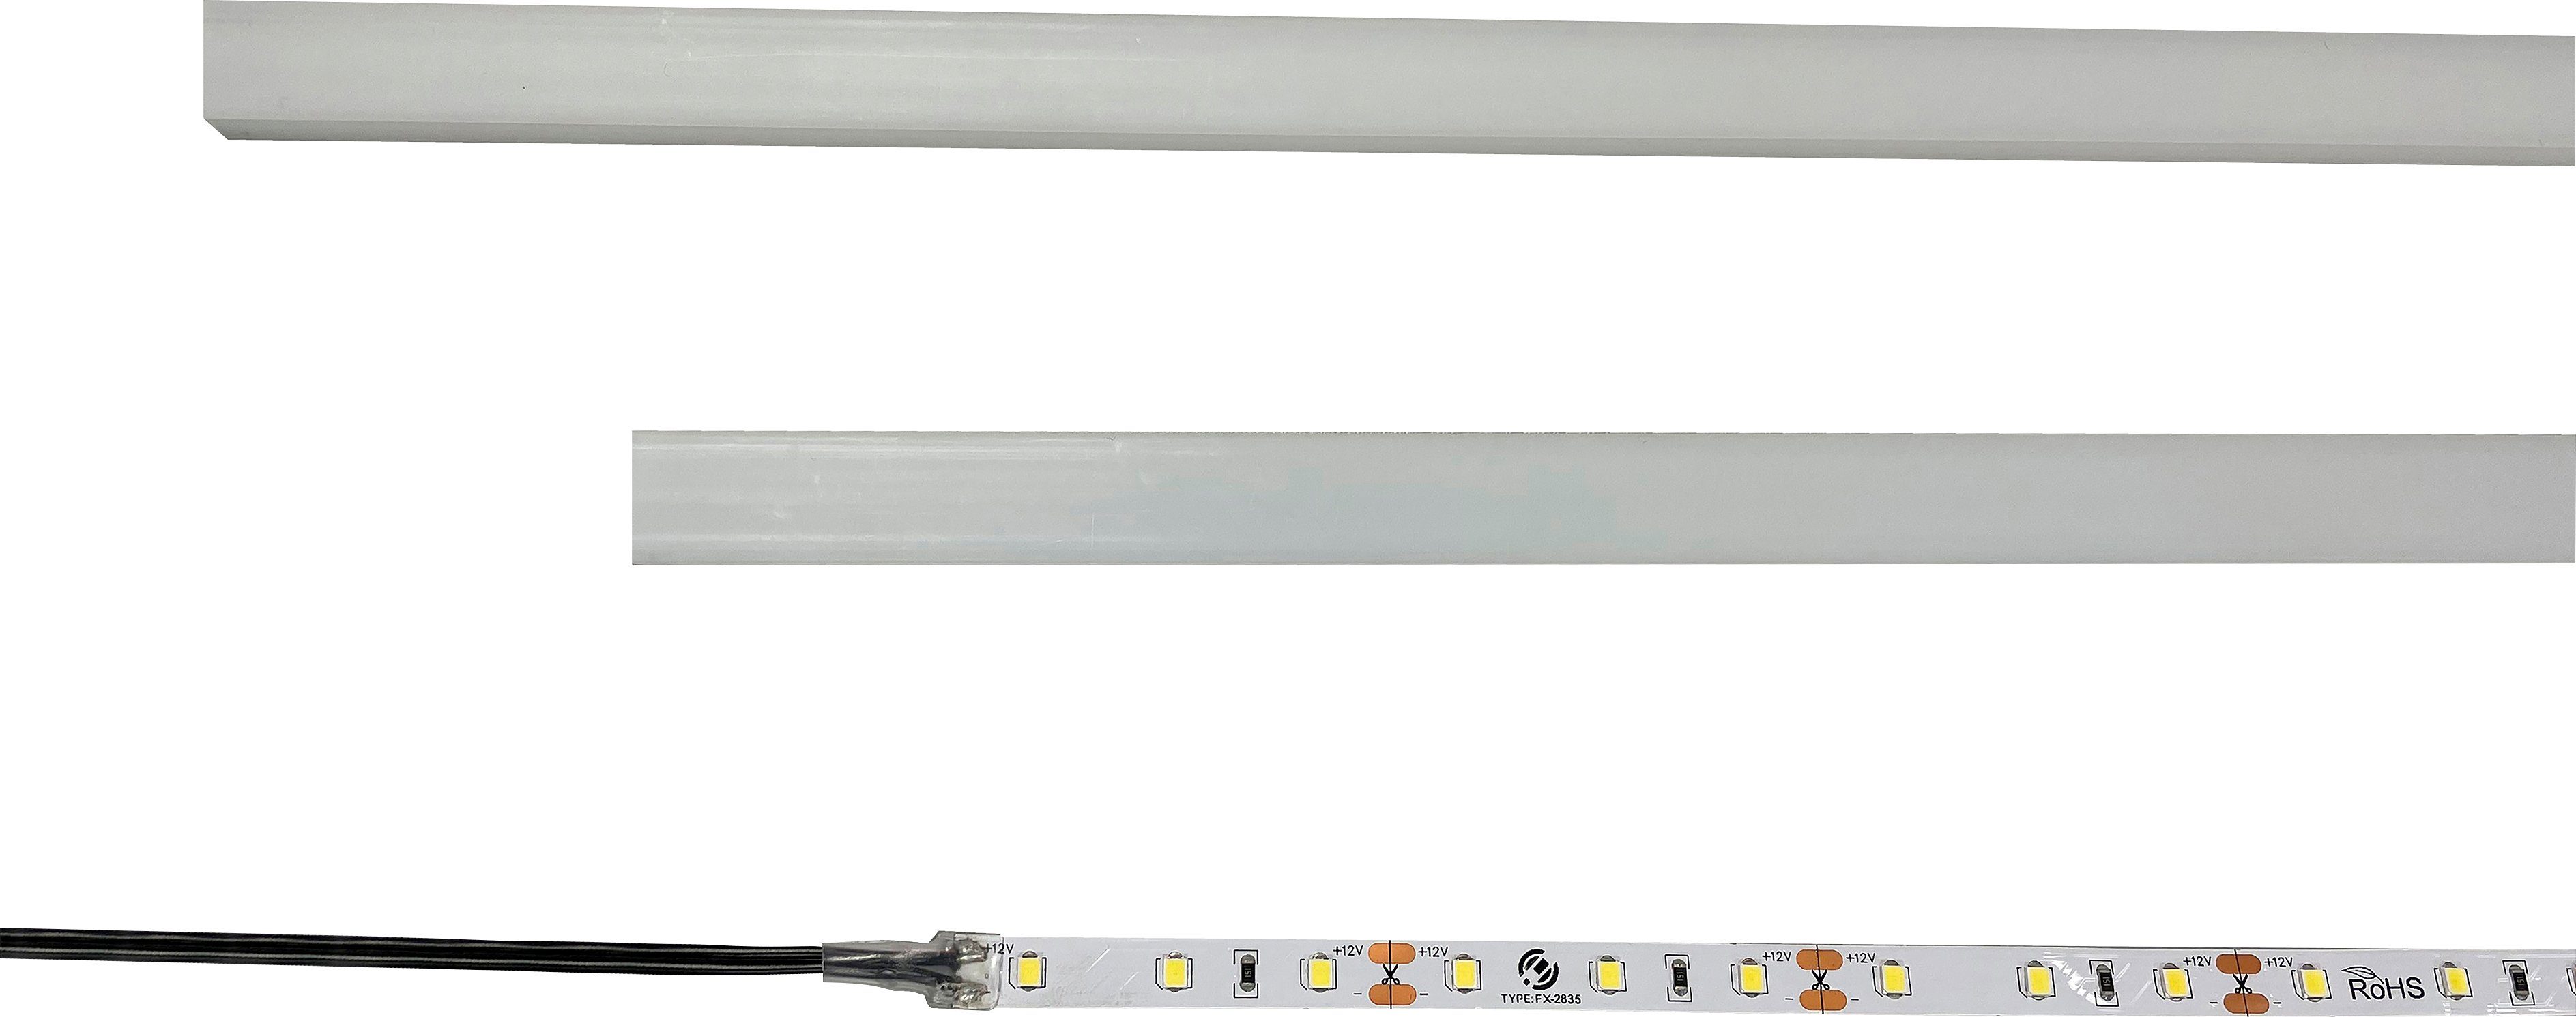 INOSIGN LED Unterbauleuchte LED-Einbauprofile universal, Ein-/Ausschalter, LED  fest integriert, Kaltweiß, optinonal für Modell Skoskap